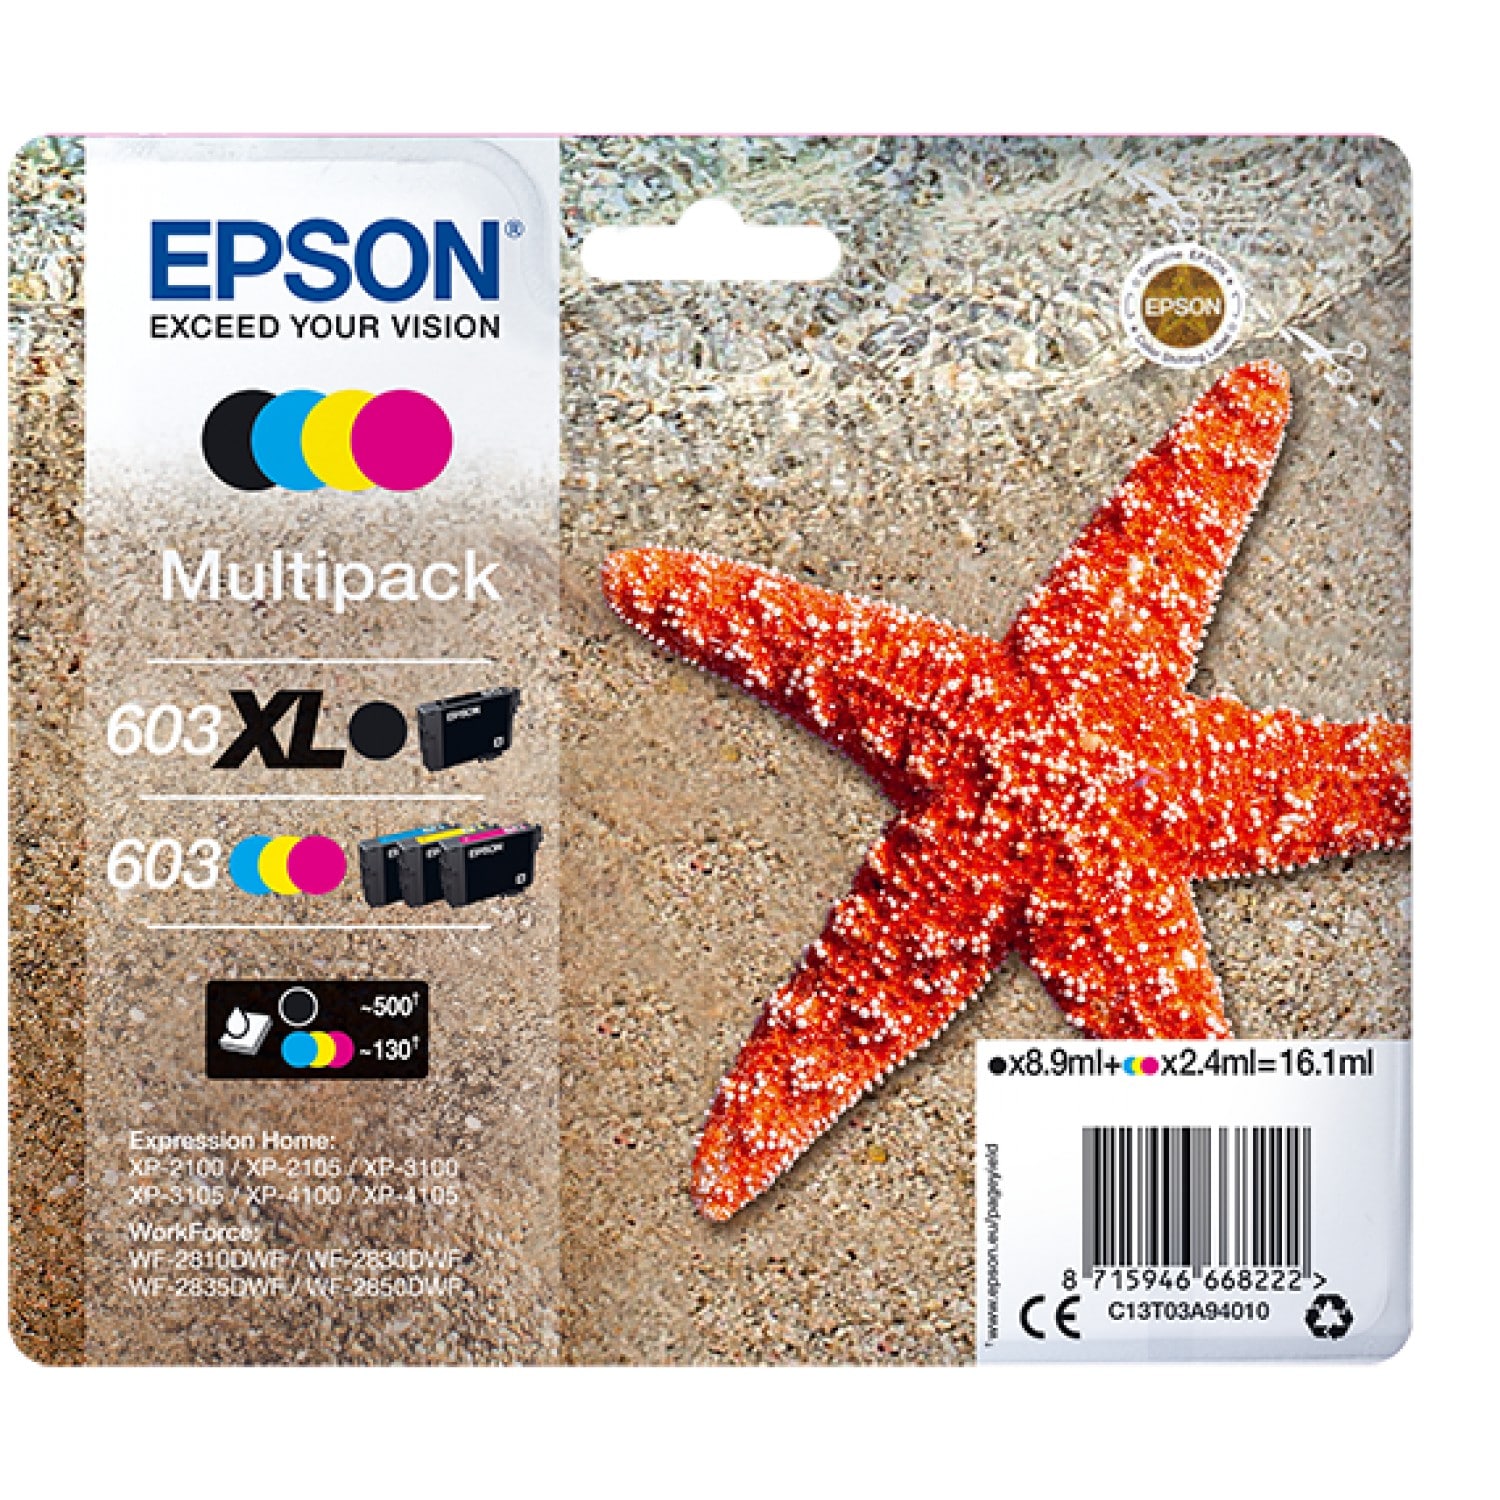 Cartouche d'encre EPSON Ananas 604XL pack 4 couleurs pour